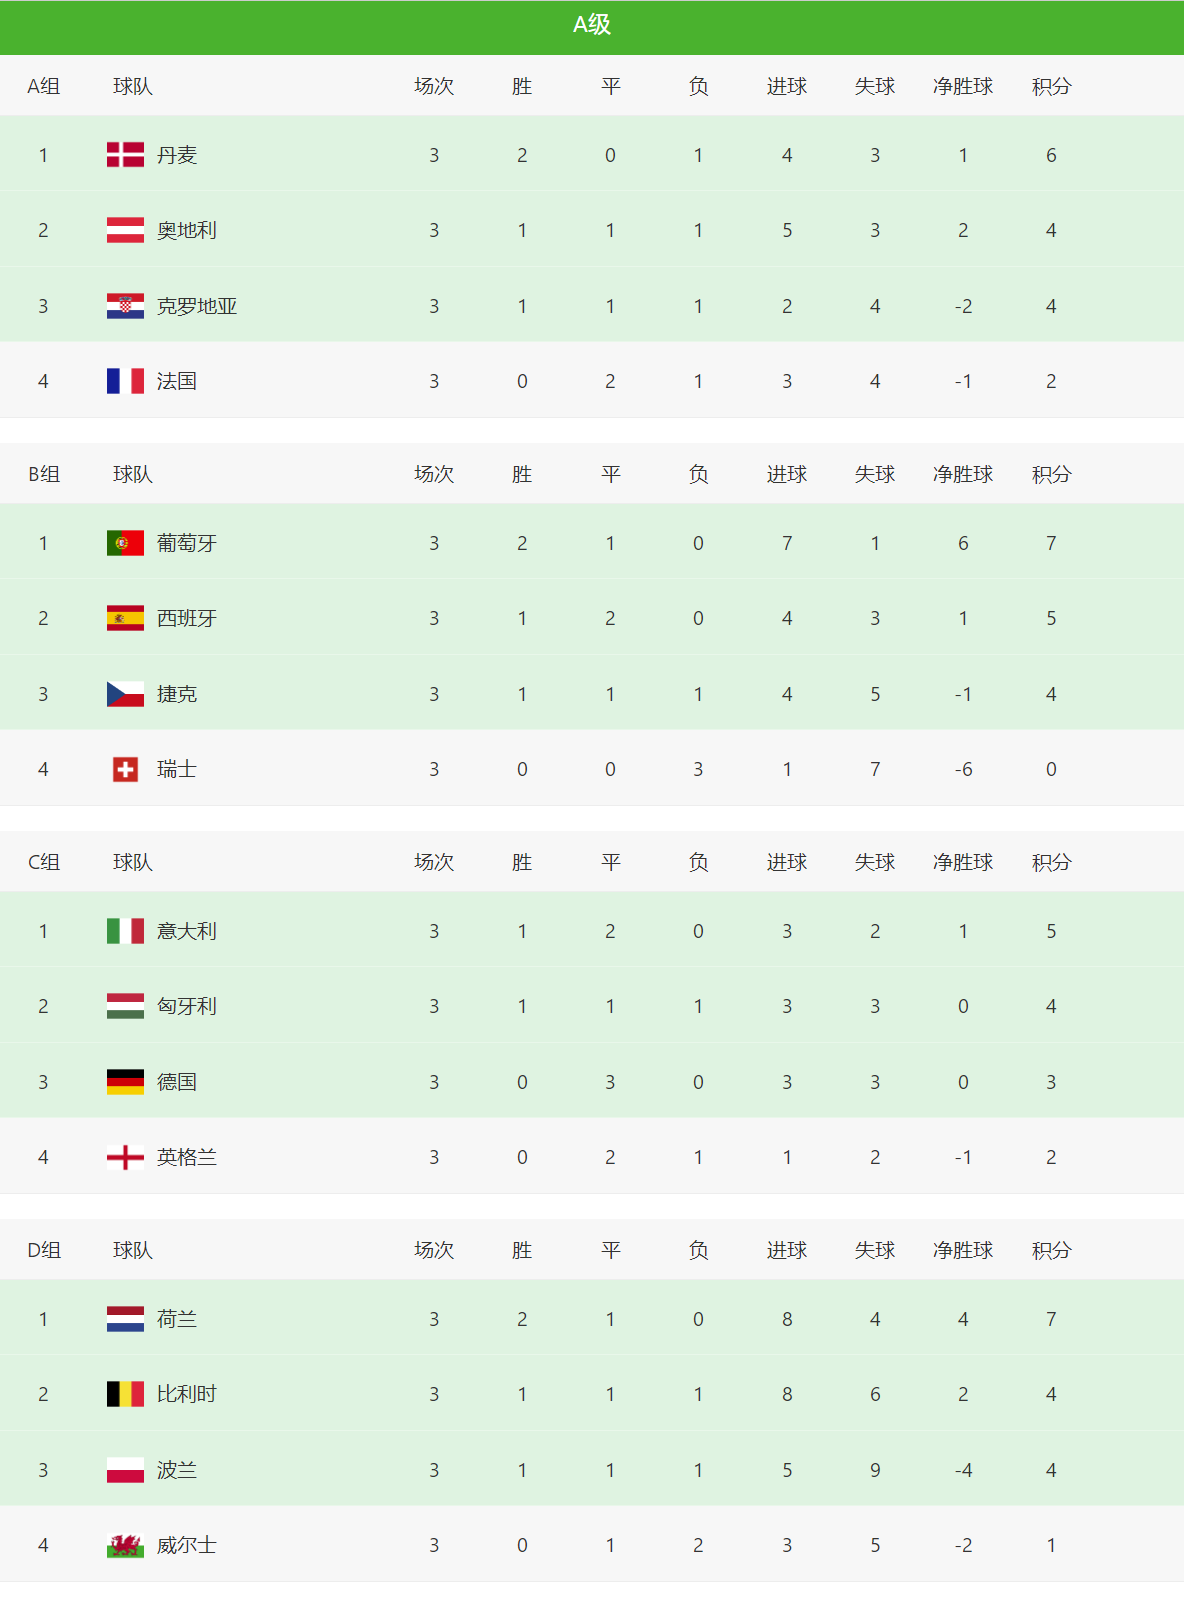 德国足球队世界排名(欧国联积分榜！英格兰、法国排名垫底，A级C组争夺非常激烈)